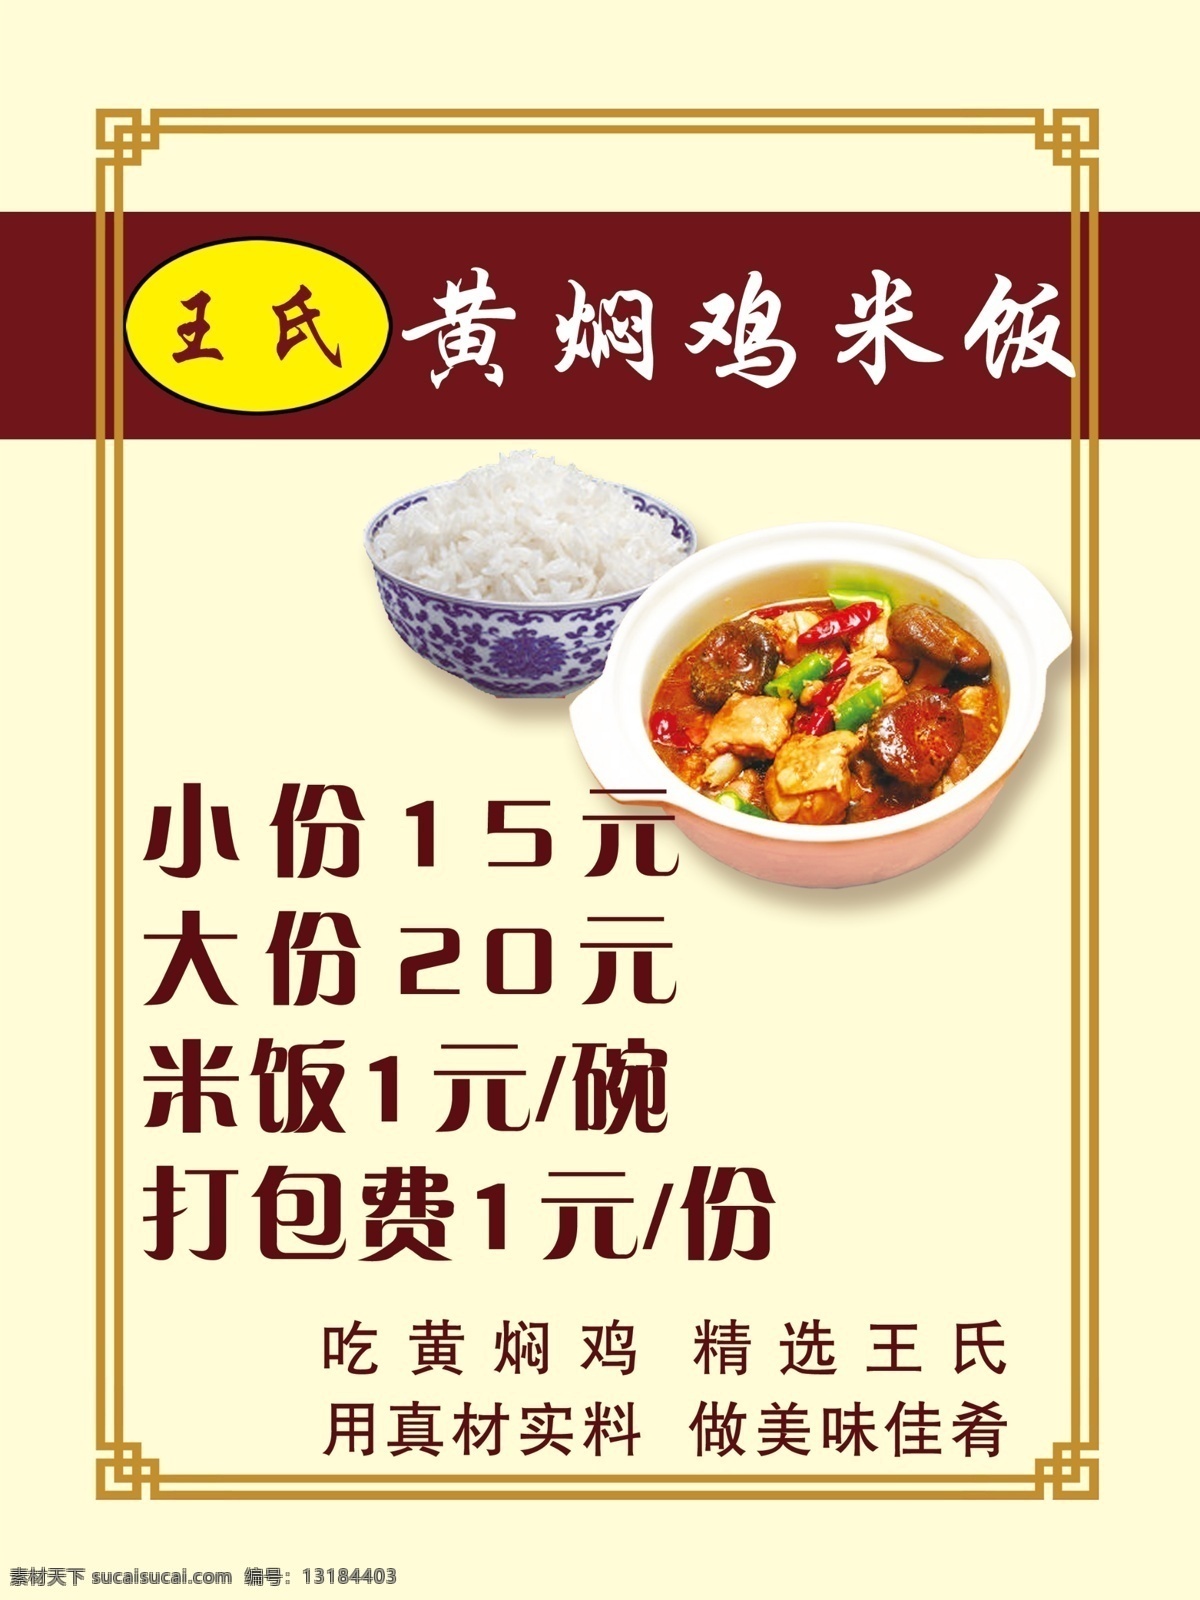 王氏 黄焖 鸡 米饭 价格表 黄焖鸡米饭 真材实料 美味佳肴 海报 dm宣传单